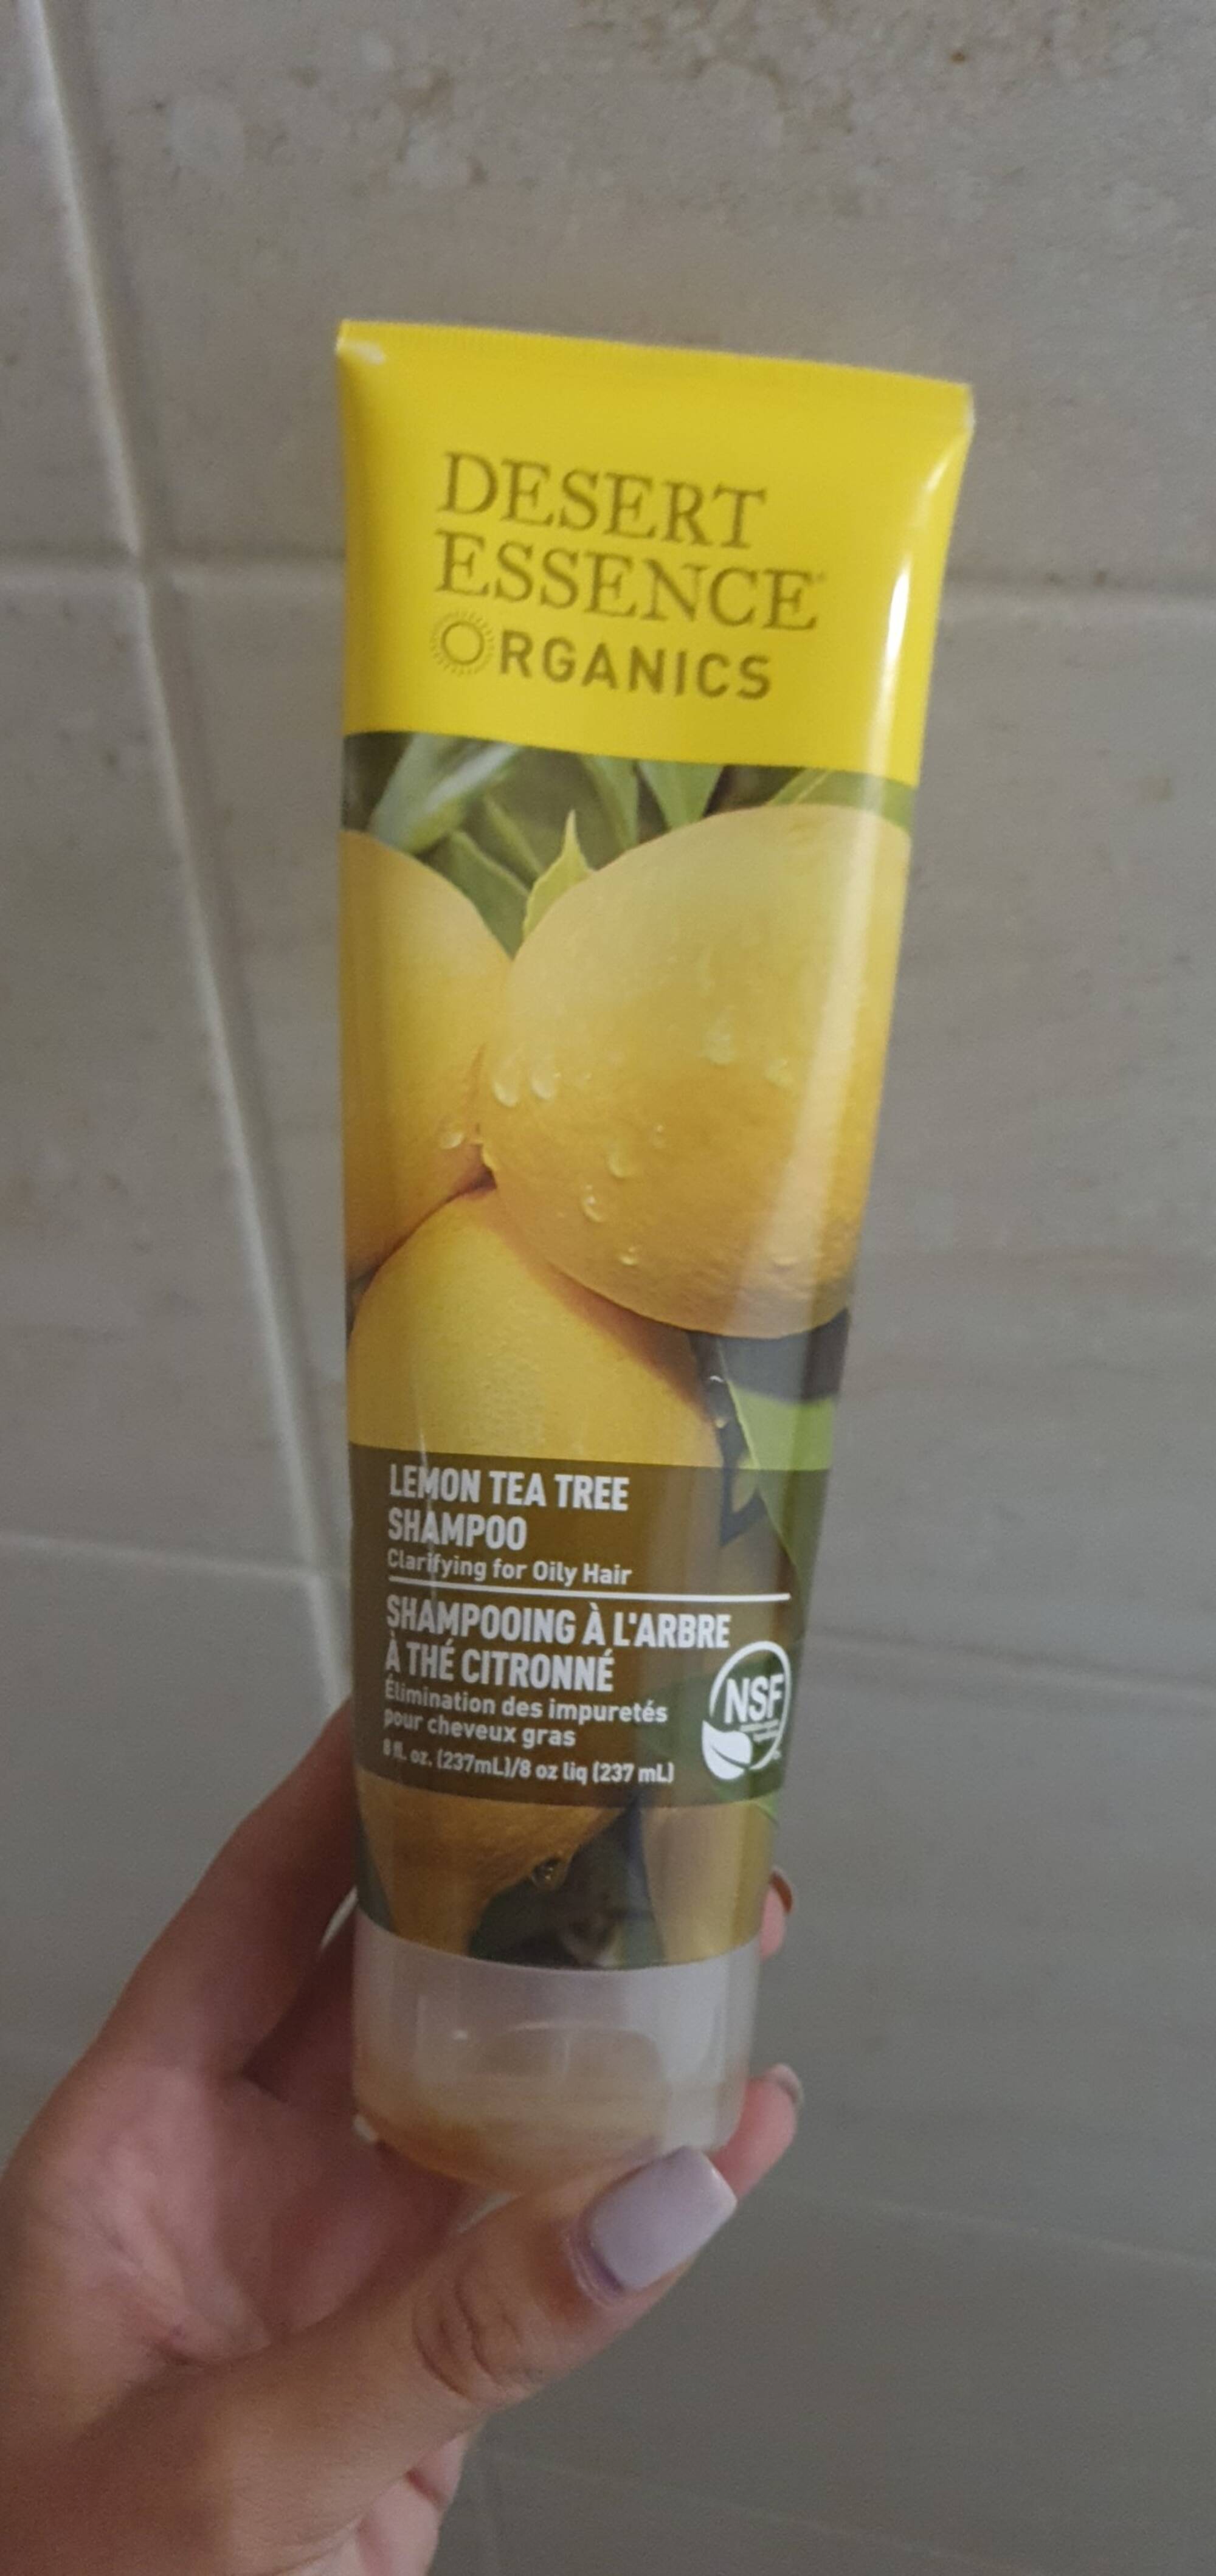 DESERT ESSENCE ORGANICS - Shampooing à l'arbre à thé citronné